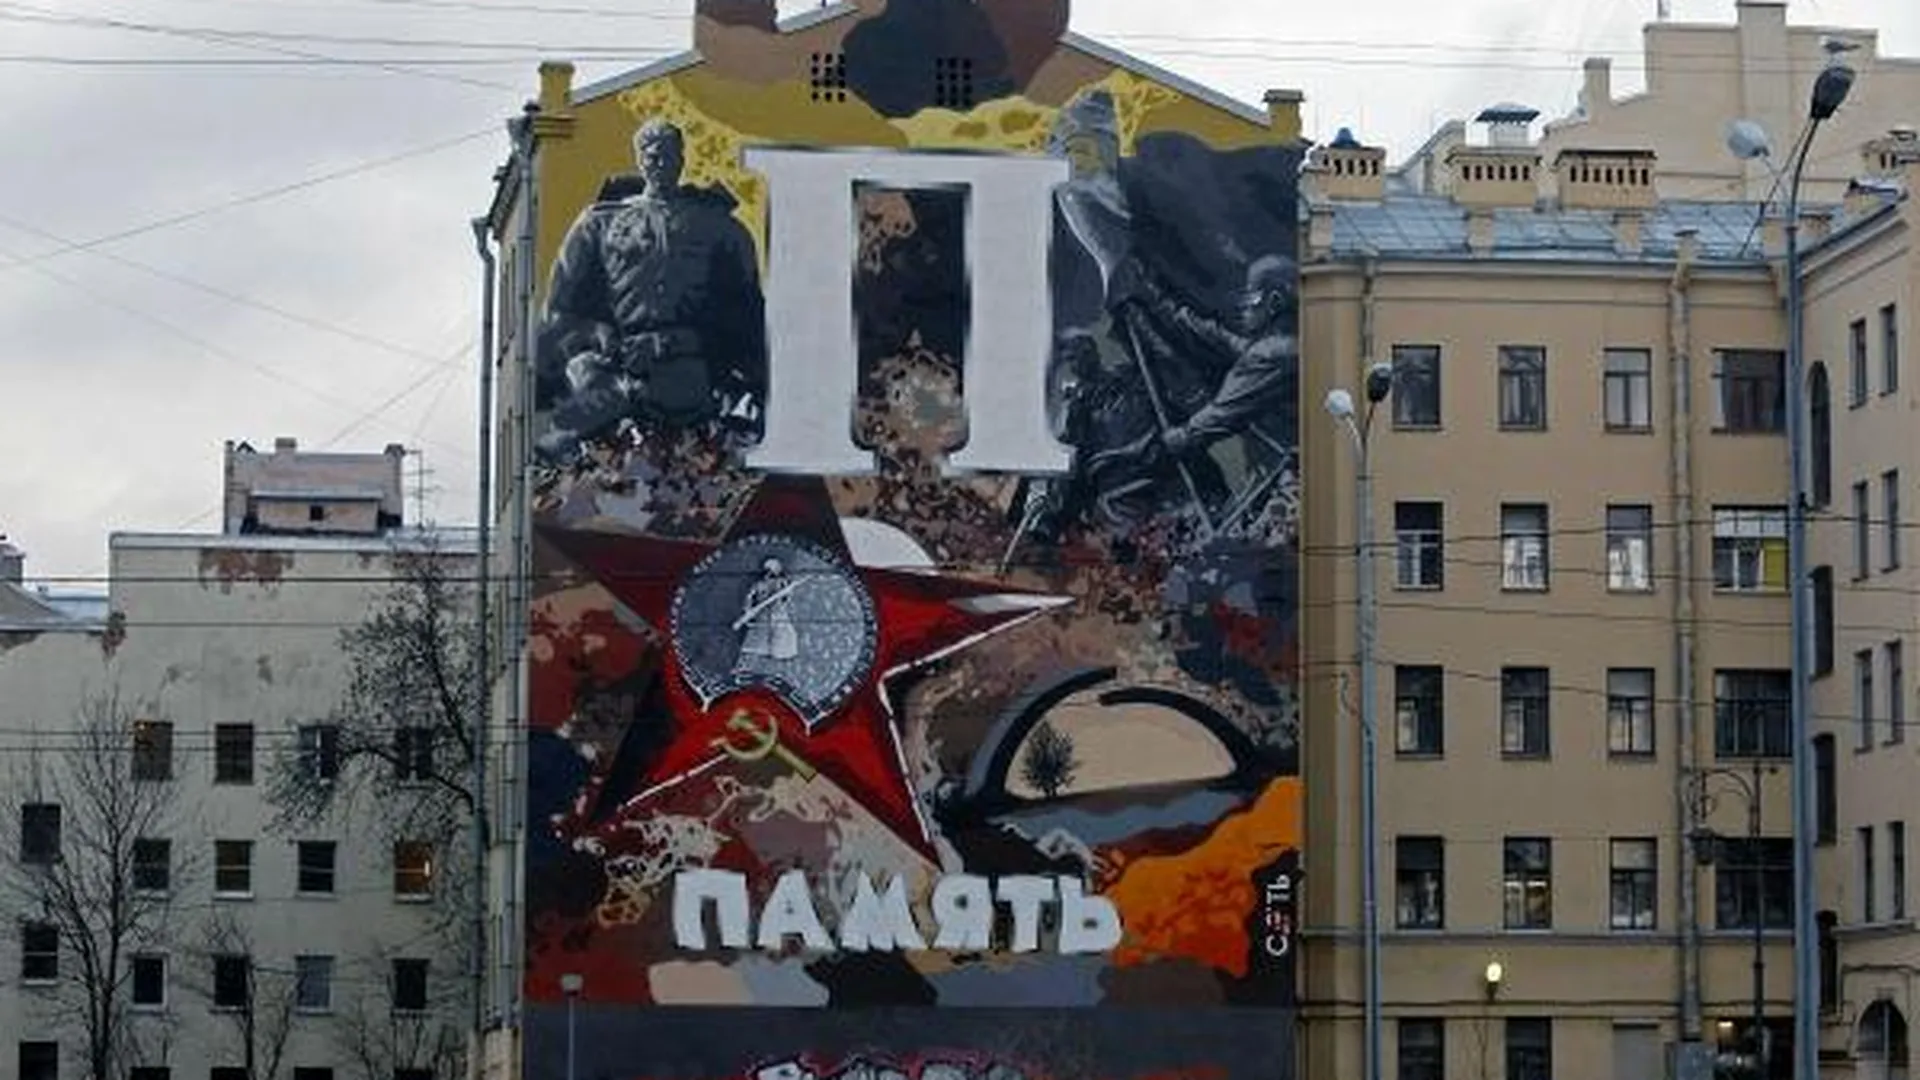 Около 100 эскизов прислали на конкурс граффити о войне в Люберцах